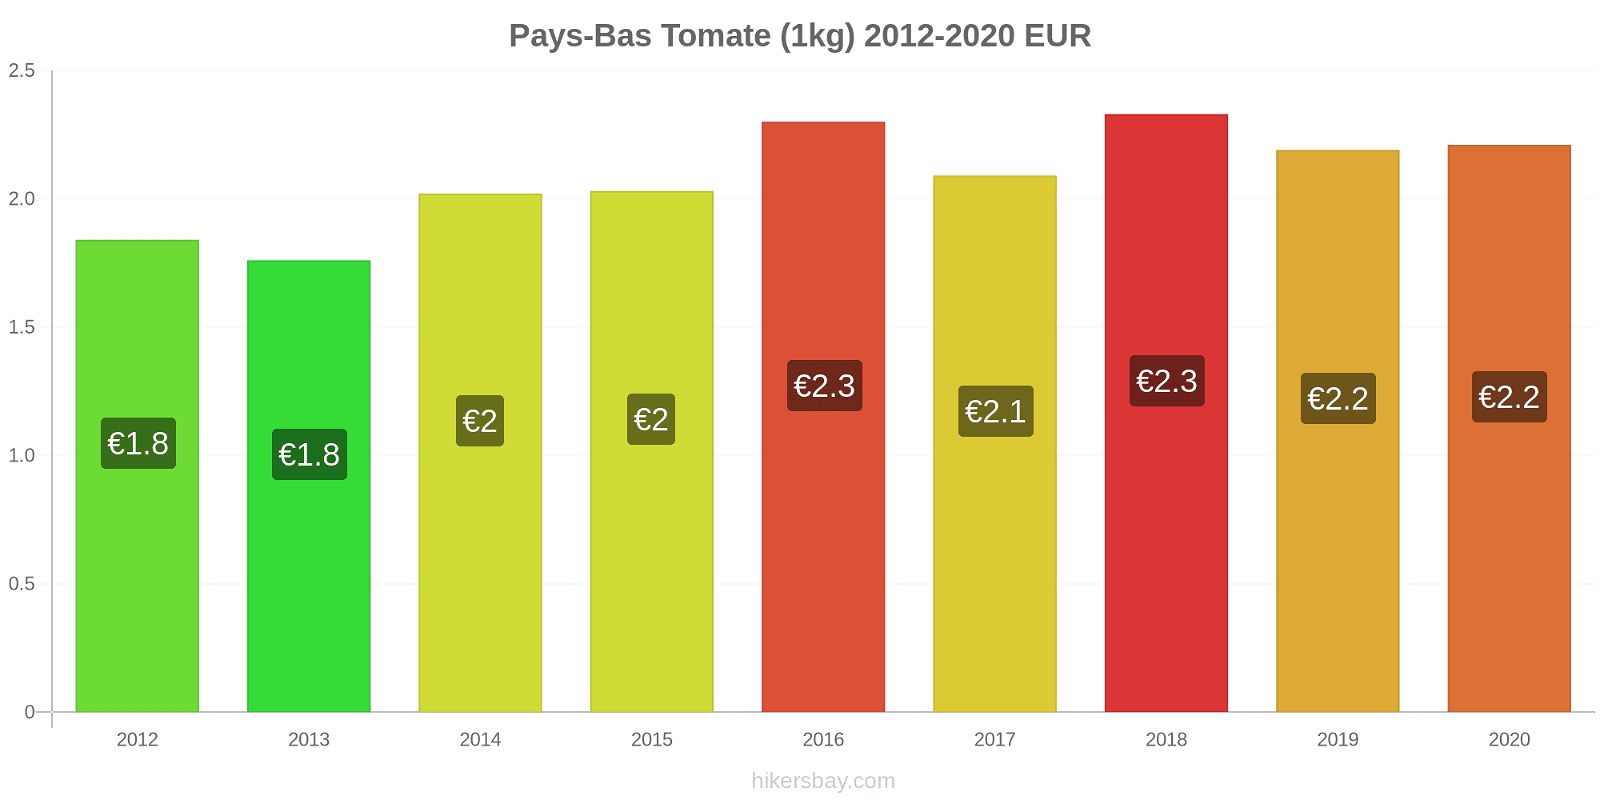 Pays-Bas changements de prix Tomate (1kg) hikersbay.com